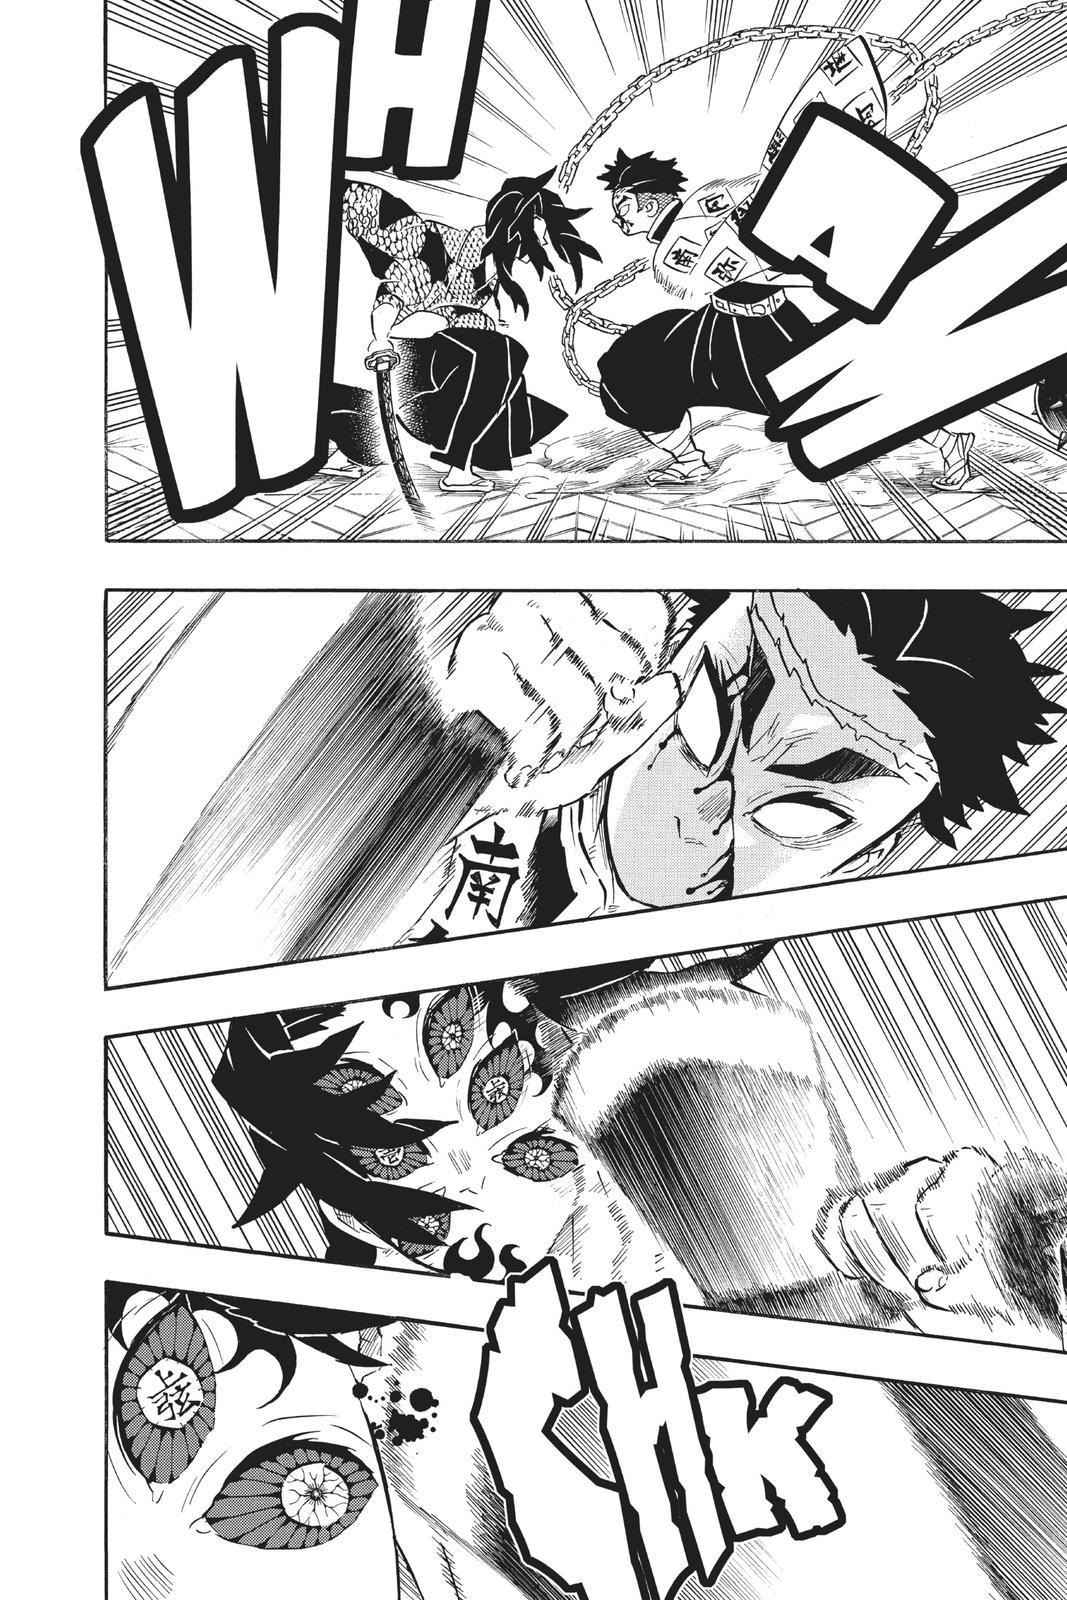 Demon Slayer Manga Manga Chapter - 171 - image 5